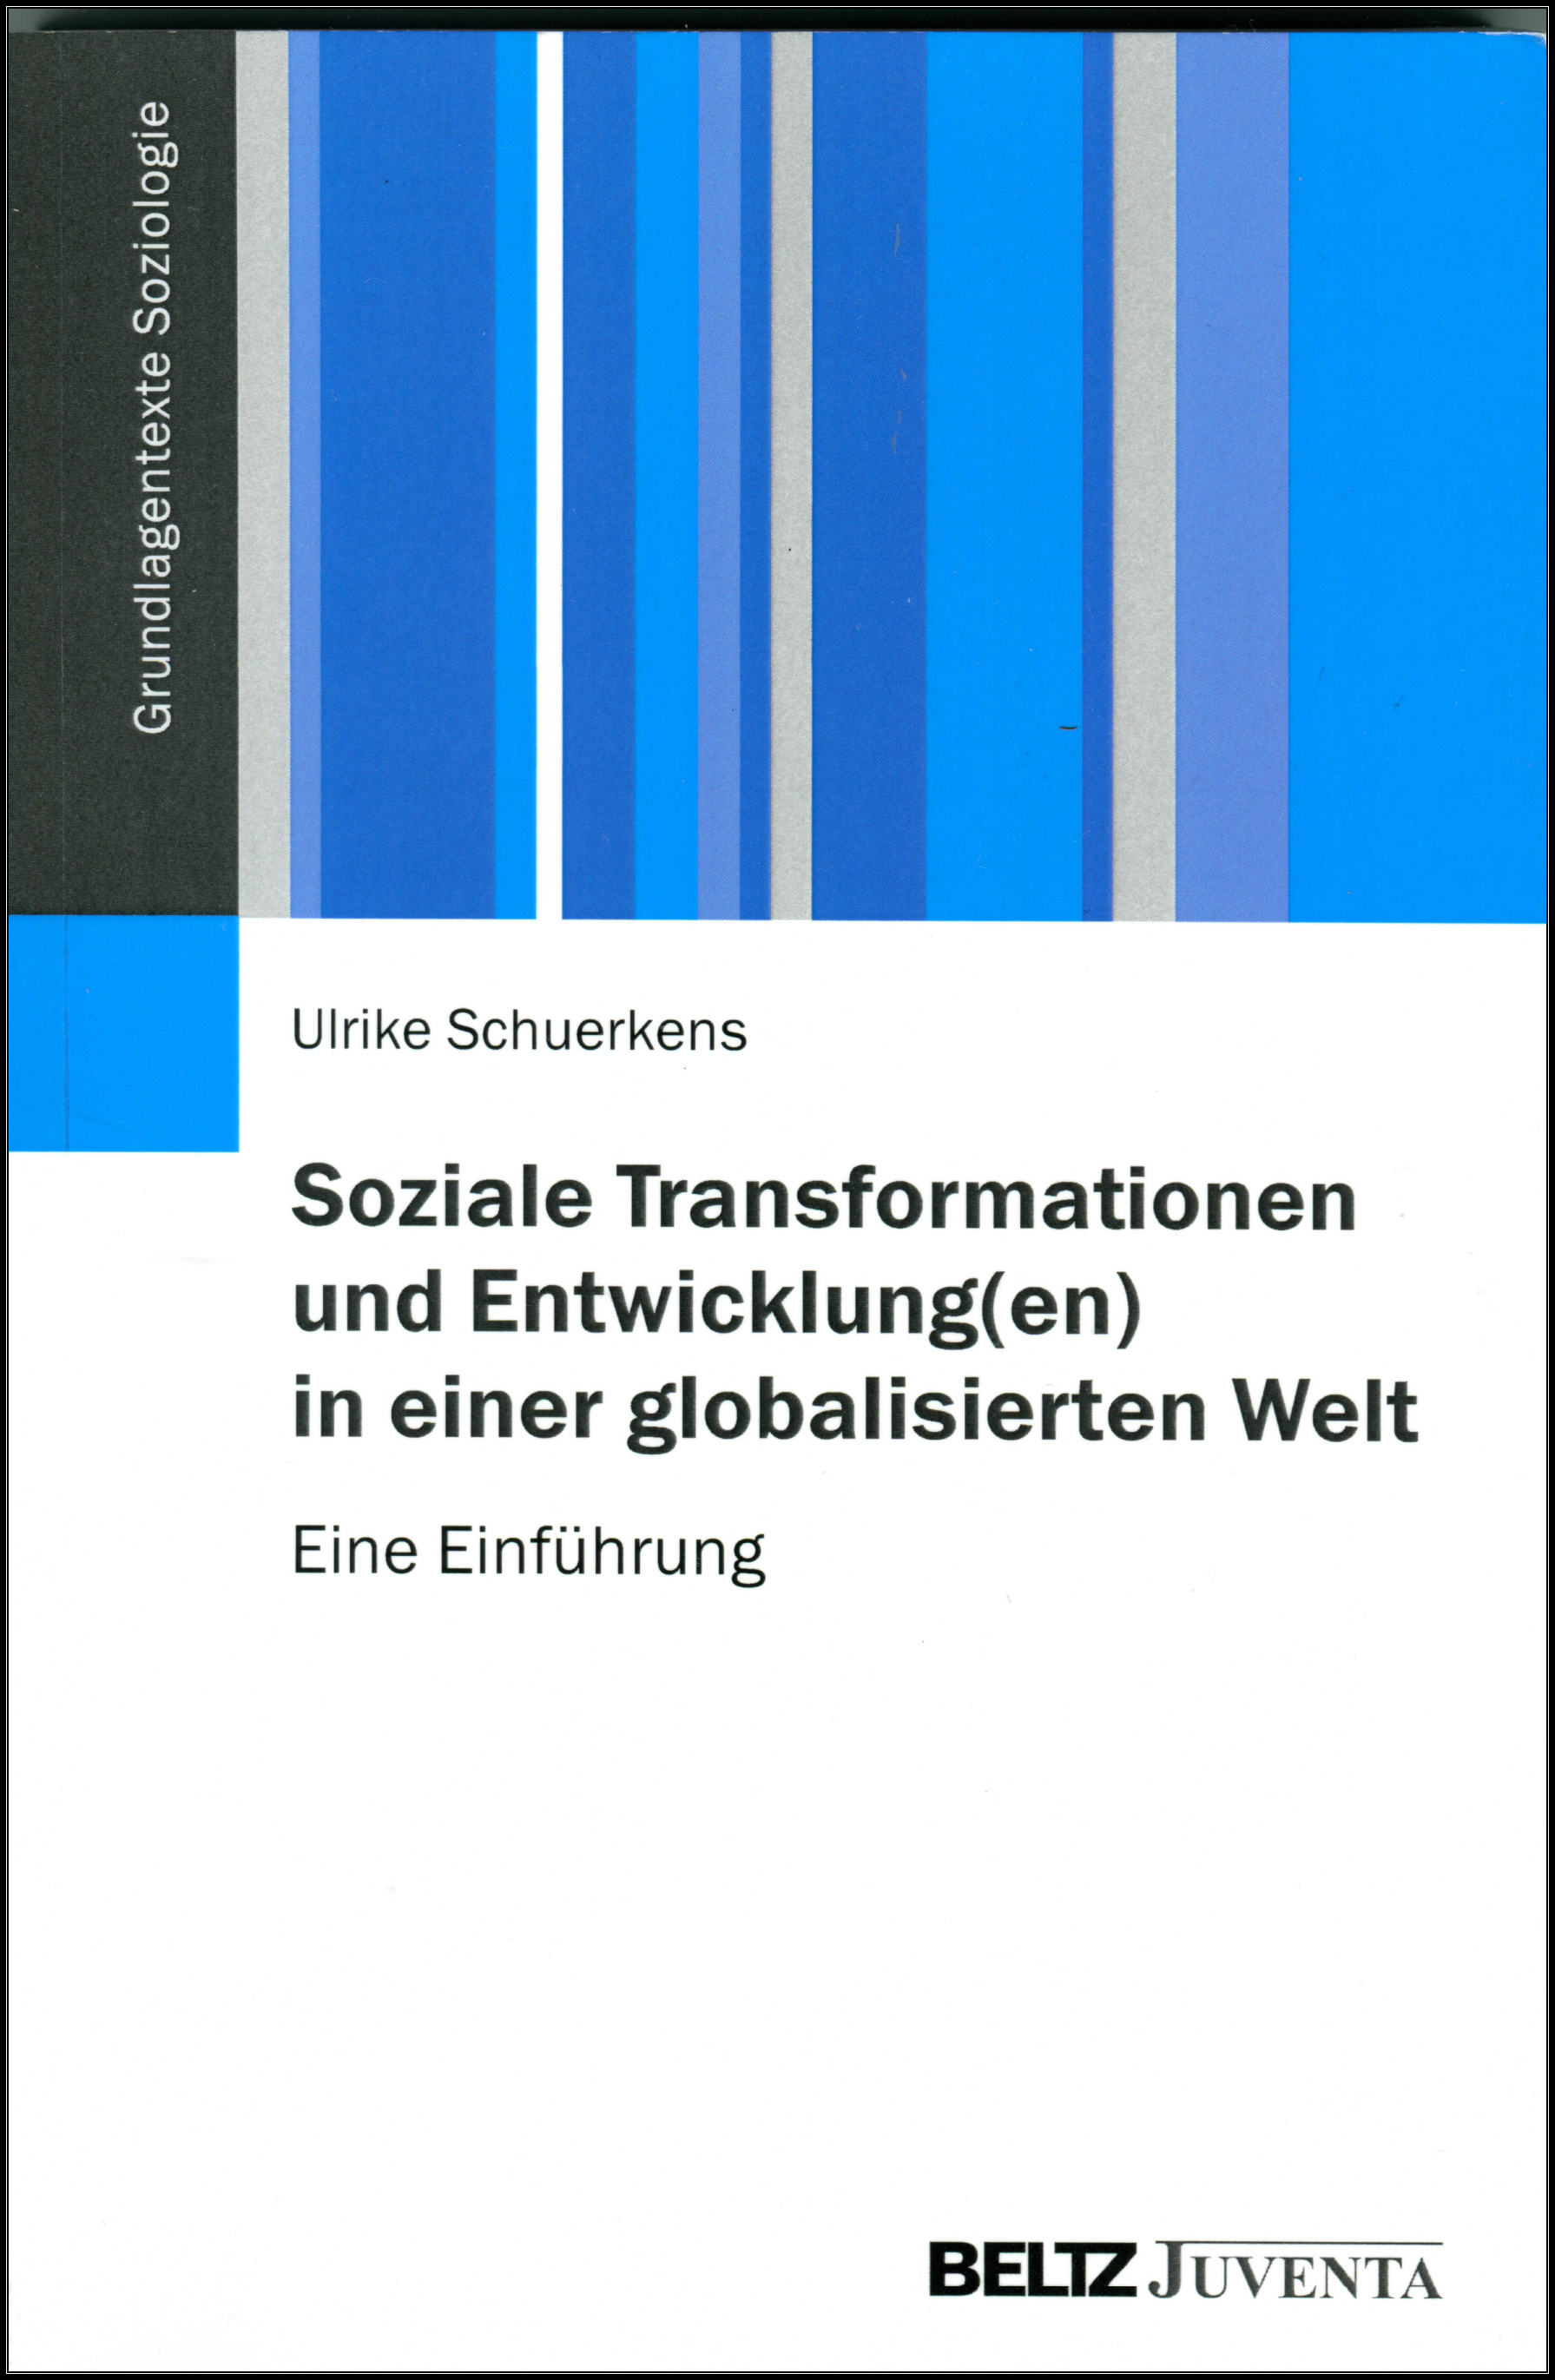 Ulrike SCHUERKENS (2014): Soziale  Transformationen und Entwicklung(en) in einer globalisierten Welt. Eine Einführung